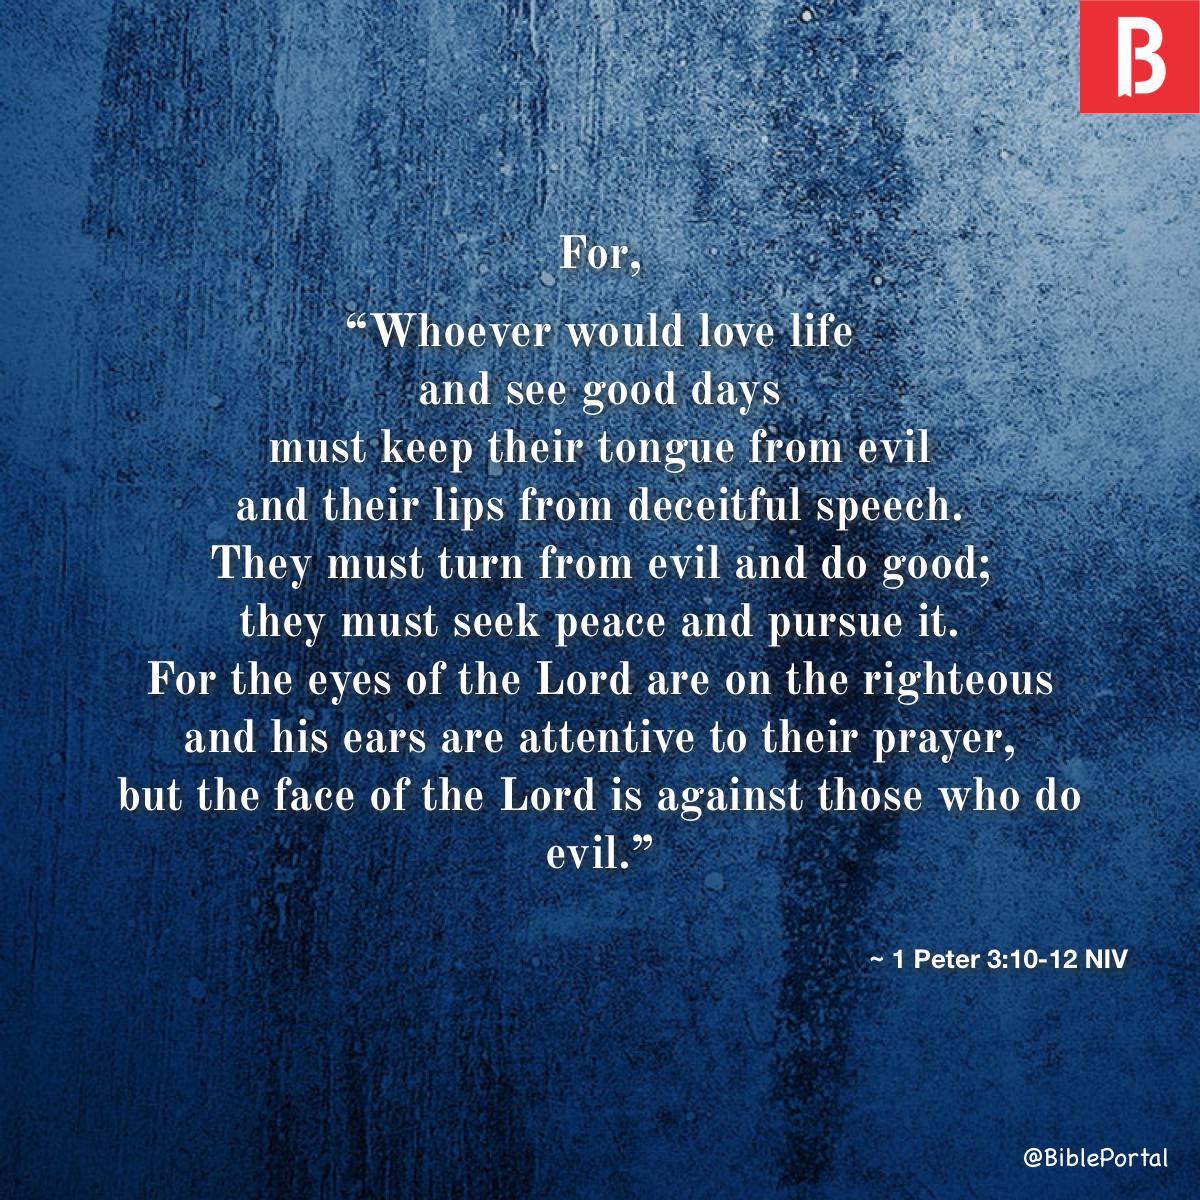 1 Peter 3:10-12 NIV